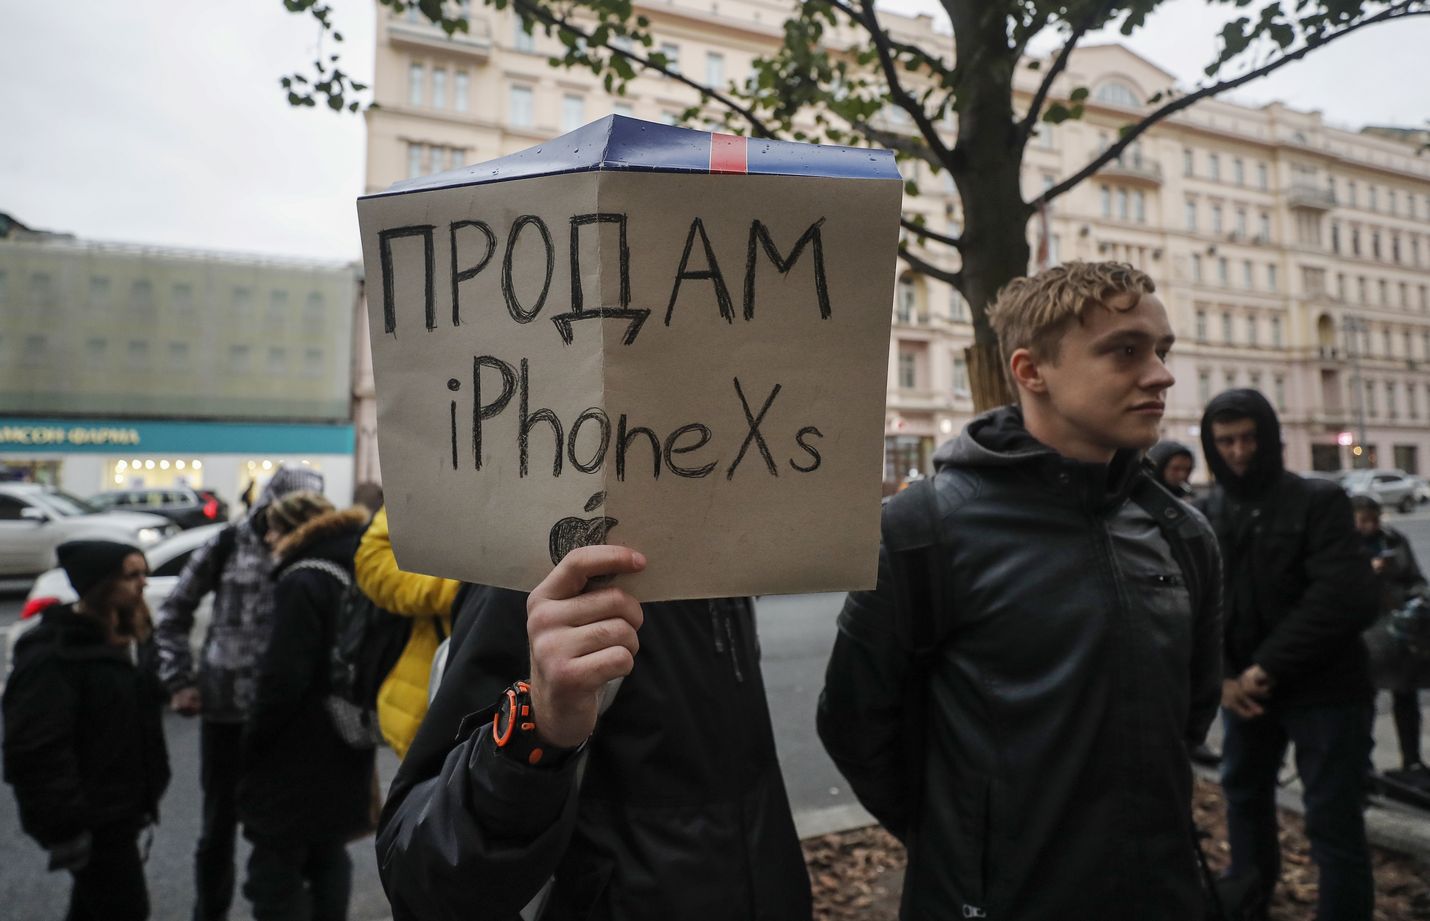 Uuden iPhone-mallin tulo kauppoihin on aina suurtapaus, eikä Venäjä ole poikkeus. Syyskuussa 2018 uusimpien Applen puhelinmallien tulo myyntiin aiheutti jonoja Moskovassa, ja kuvan mies piteli kylttiä Myyn iPhone XS:n. Tänä syksynä Venäjällä himoitaan epävirallisia iPhoneja.